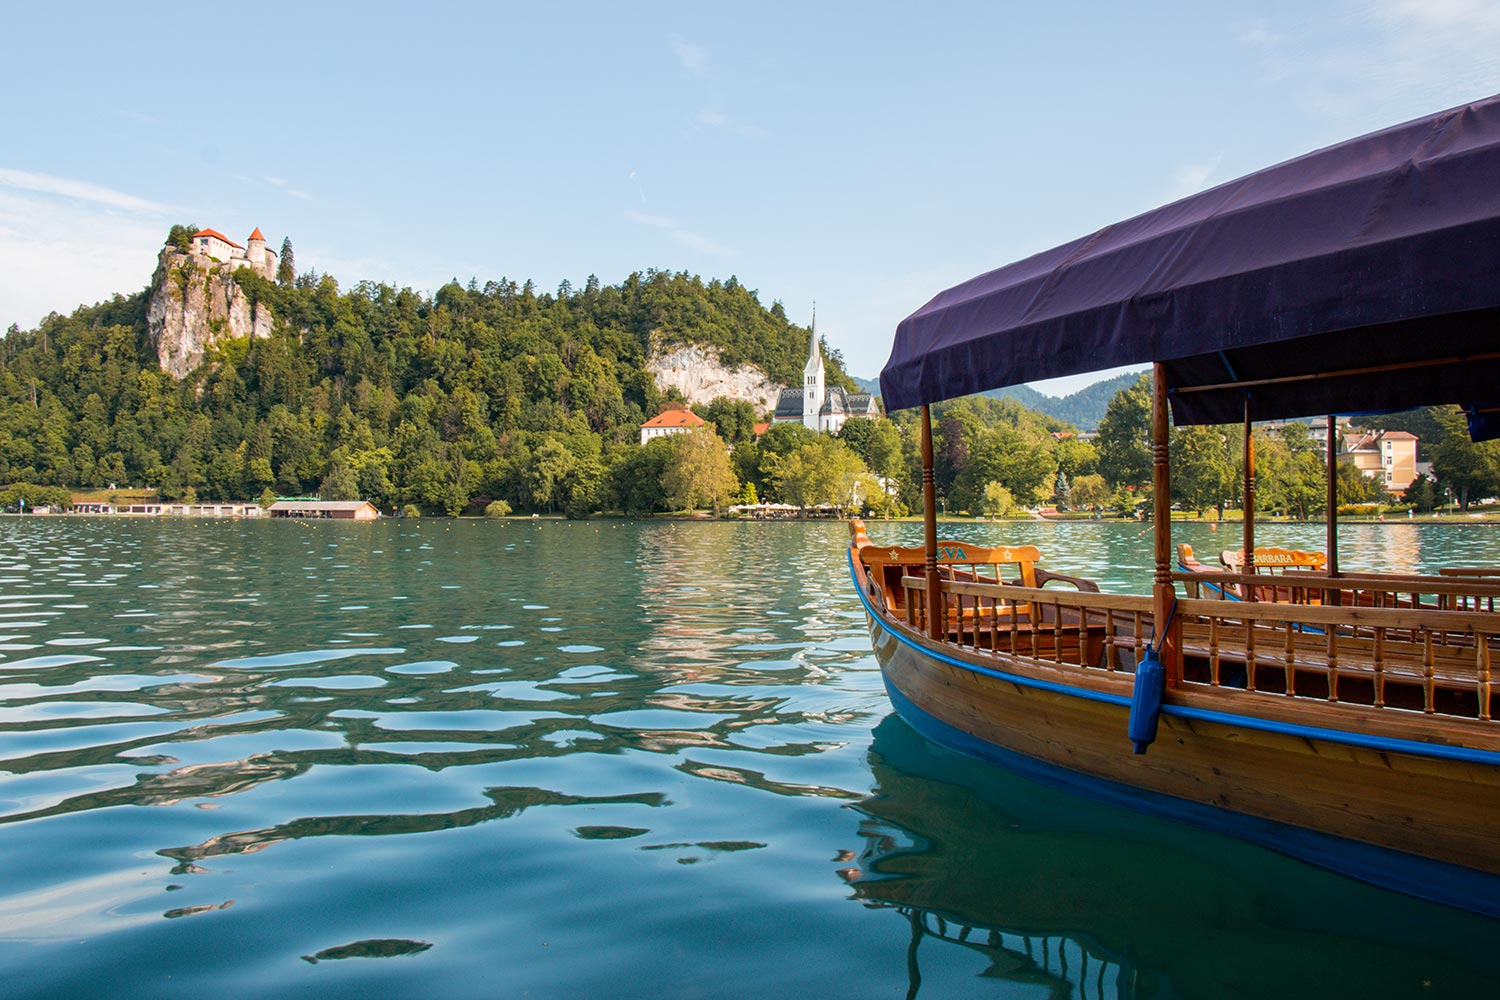 Bateau et château, Lac Bled, Slovénie / Boat and castle, Lake Bled, Slovenia